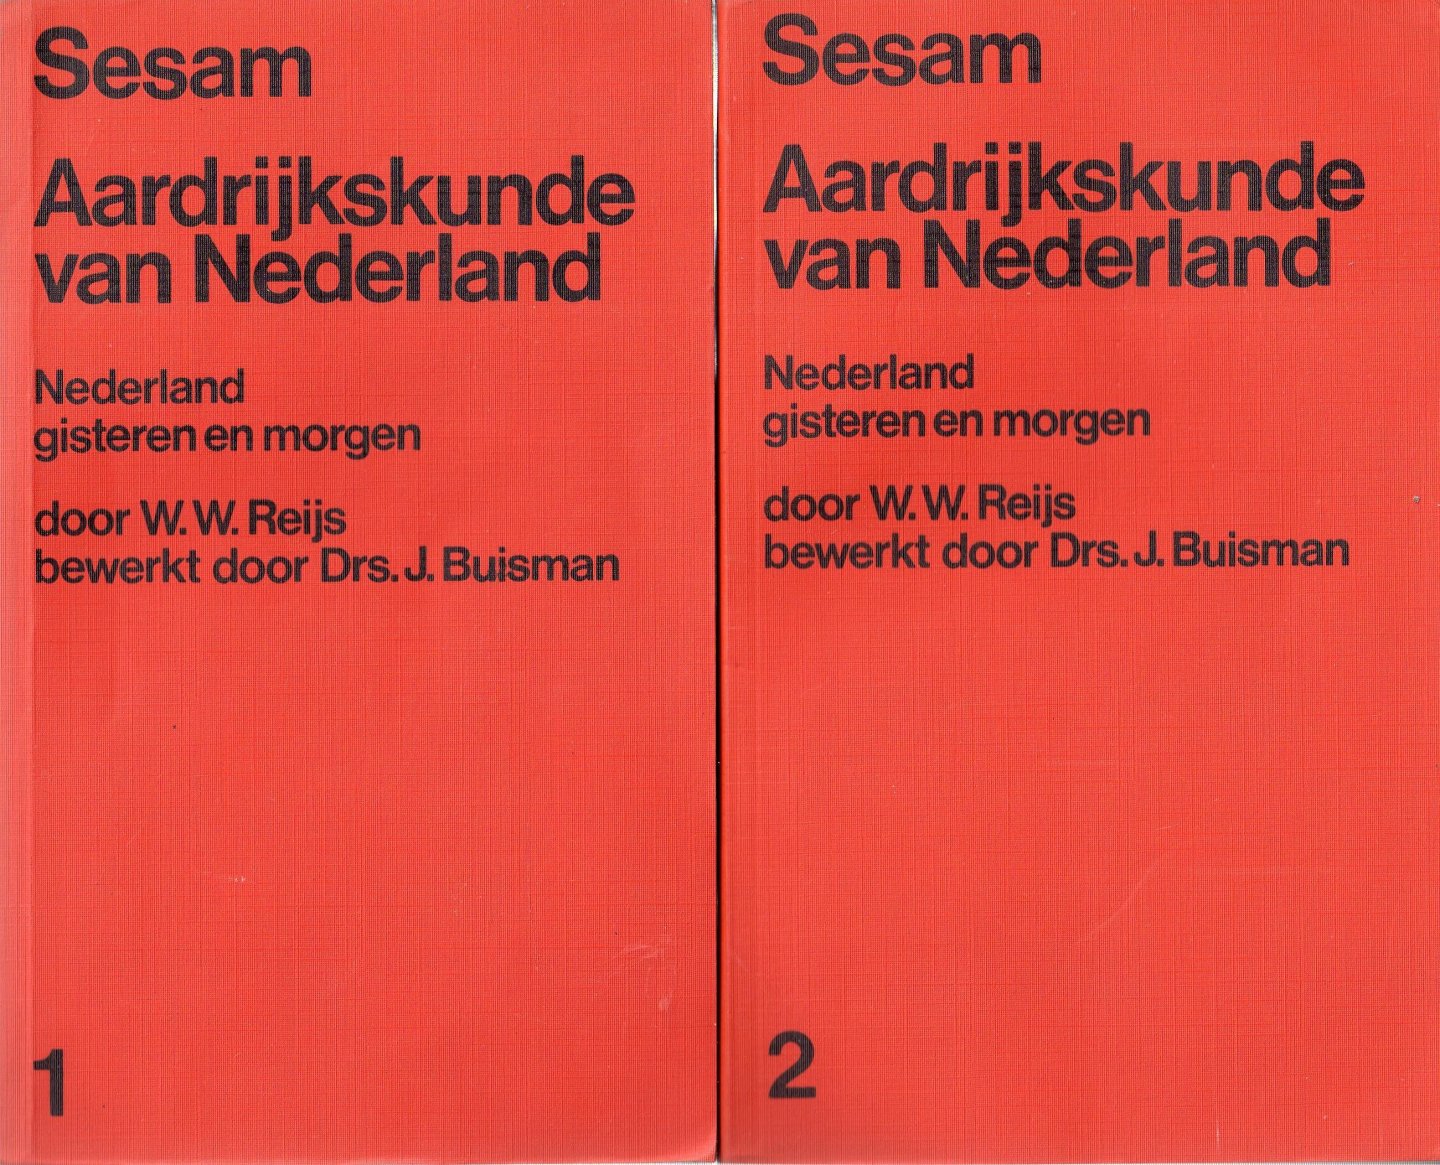 Reijs W.W. (bewerkt door Drs. J. Buisman) - Sesam Aardrijkskunde van Nederland. Nederland gisteren en morgen, deel 1 + 2